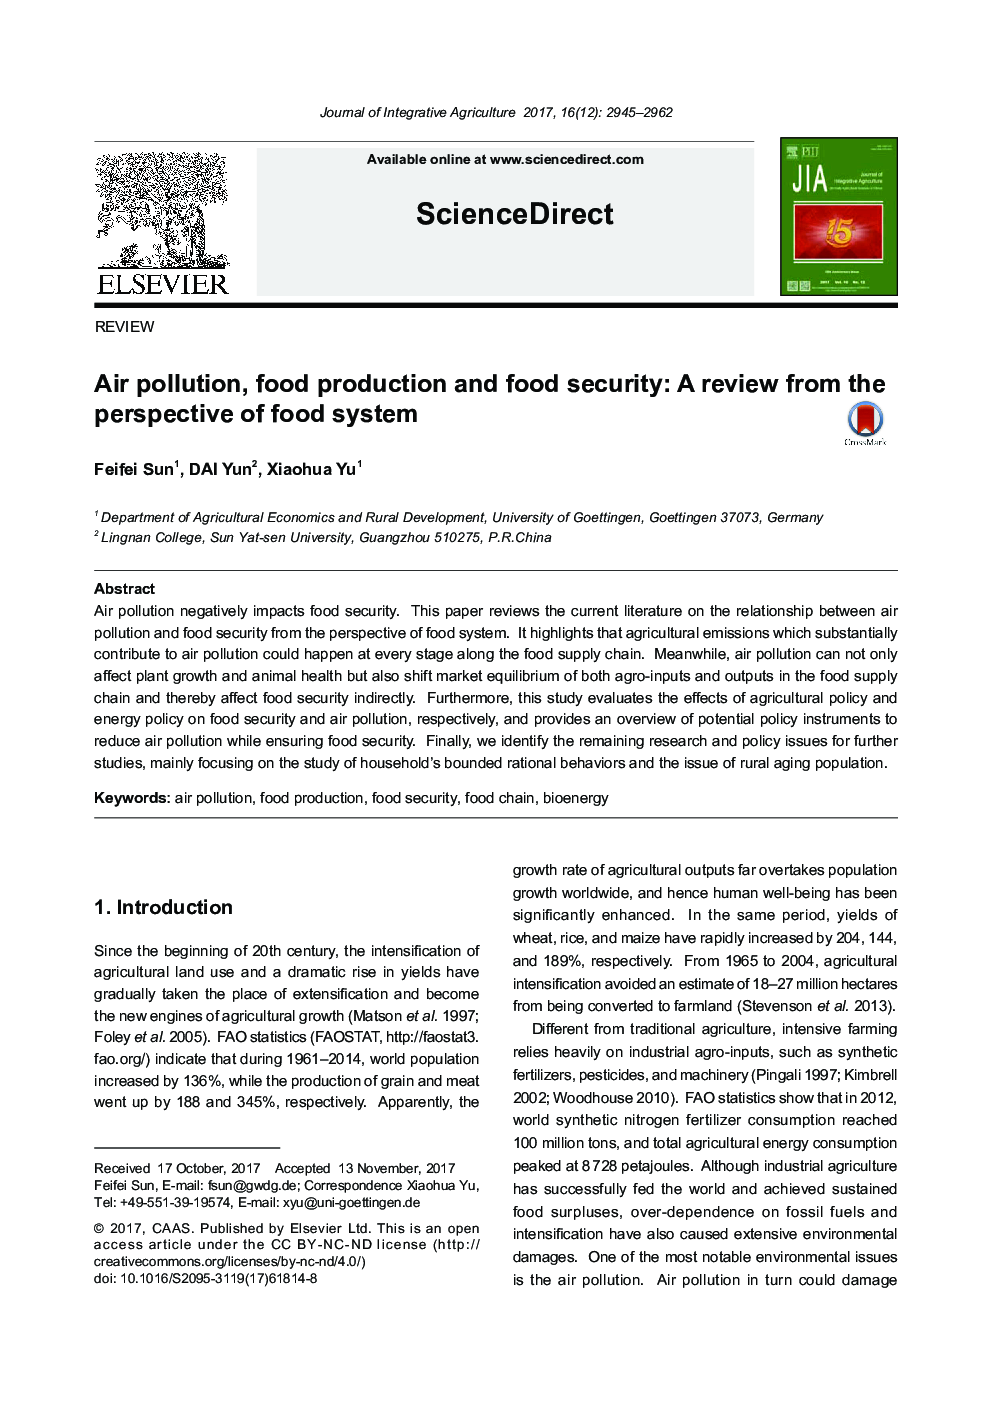 آلودگی هوا، تولید مواد غذایی و امنیت غذایی: بررسی از دیدگاه سیستم غذا 